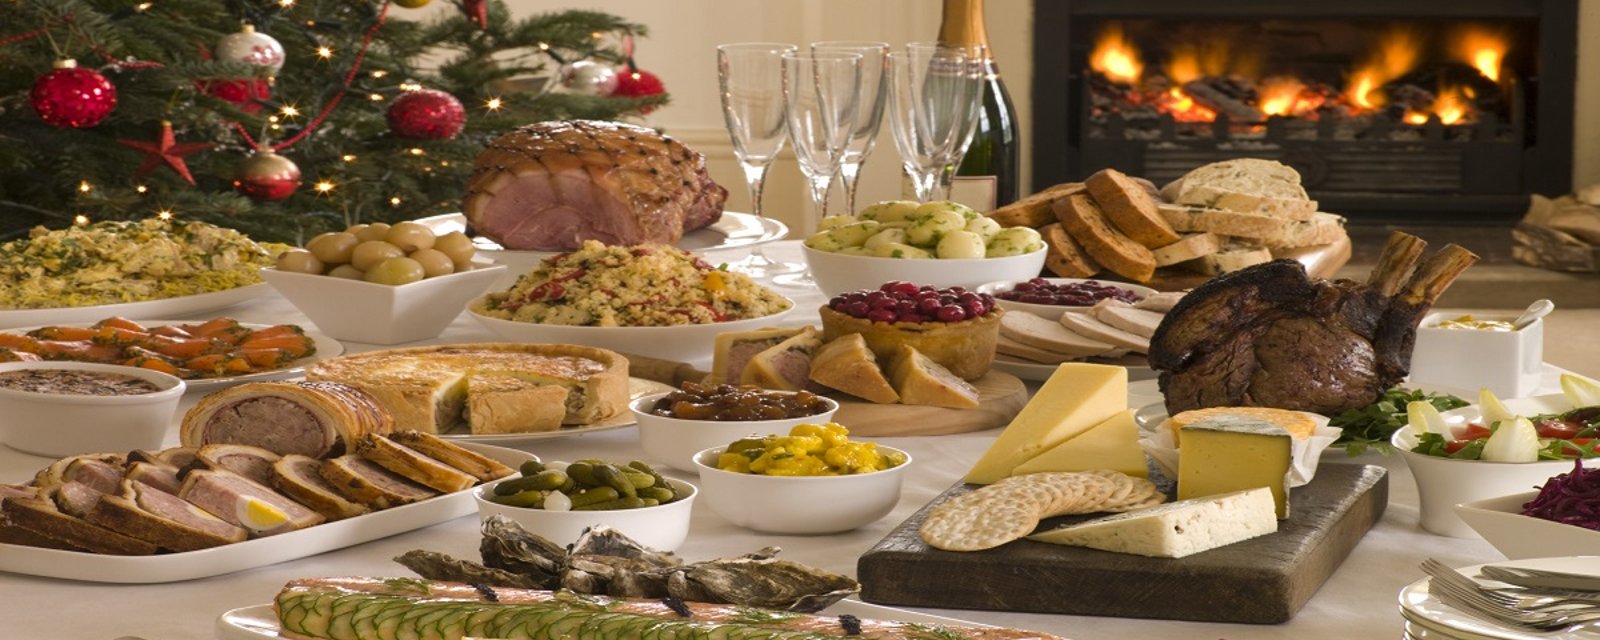 Ce Noël, préparez le meilleur repas du temps des Fêtes grâce à ces 8 conseils simples! 